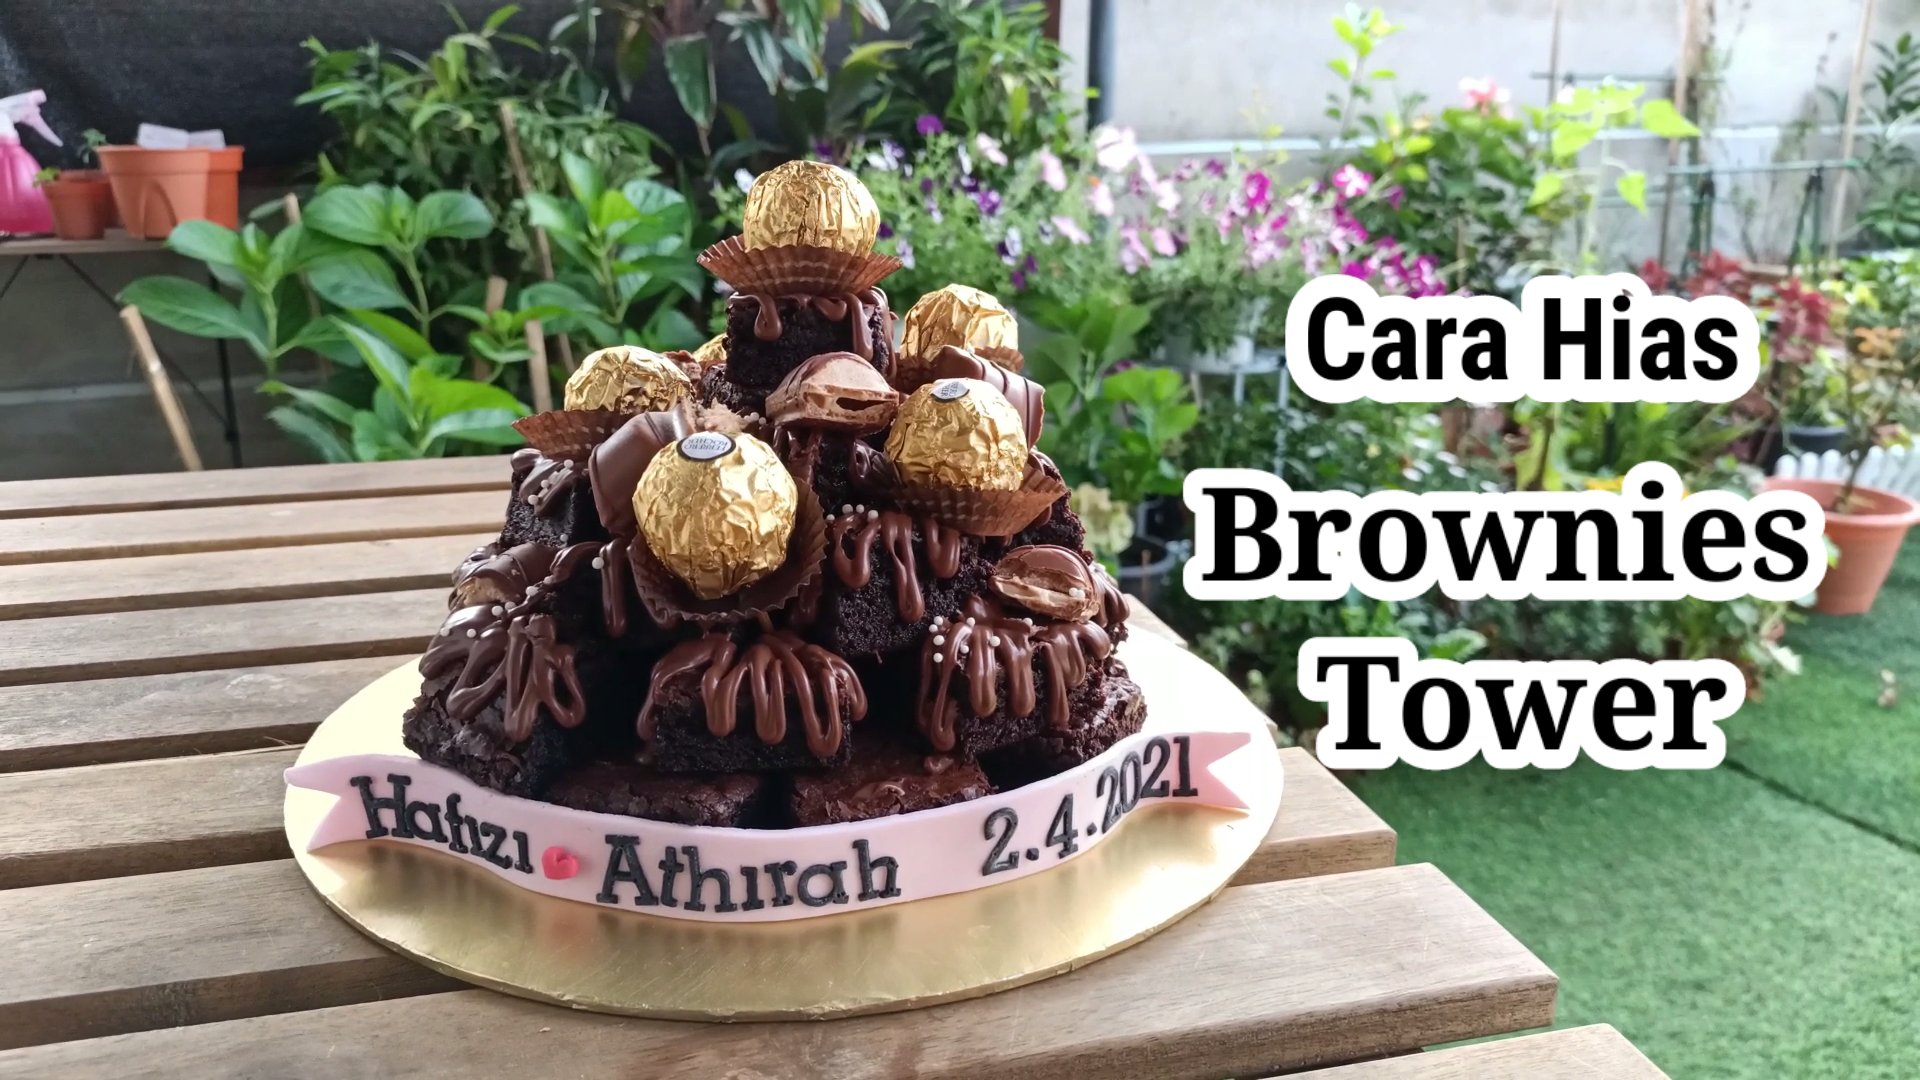 Brownies tower